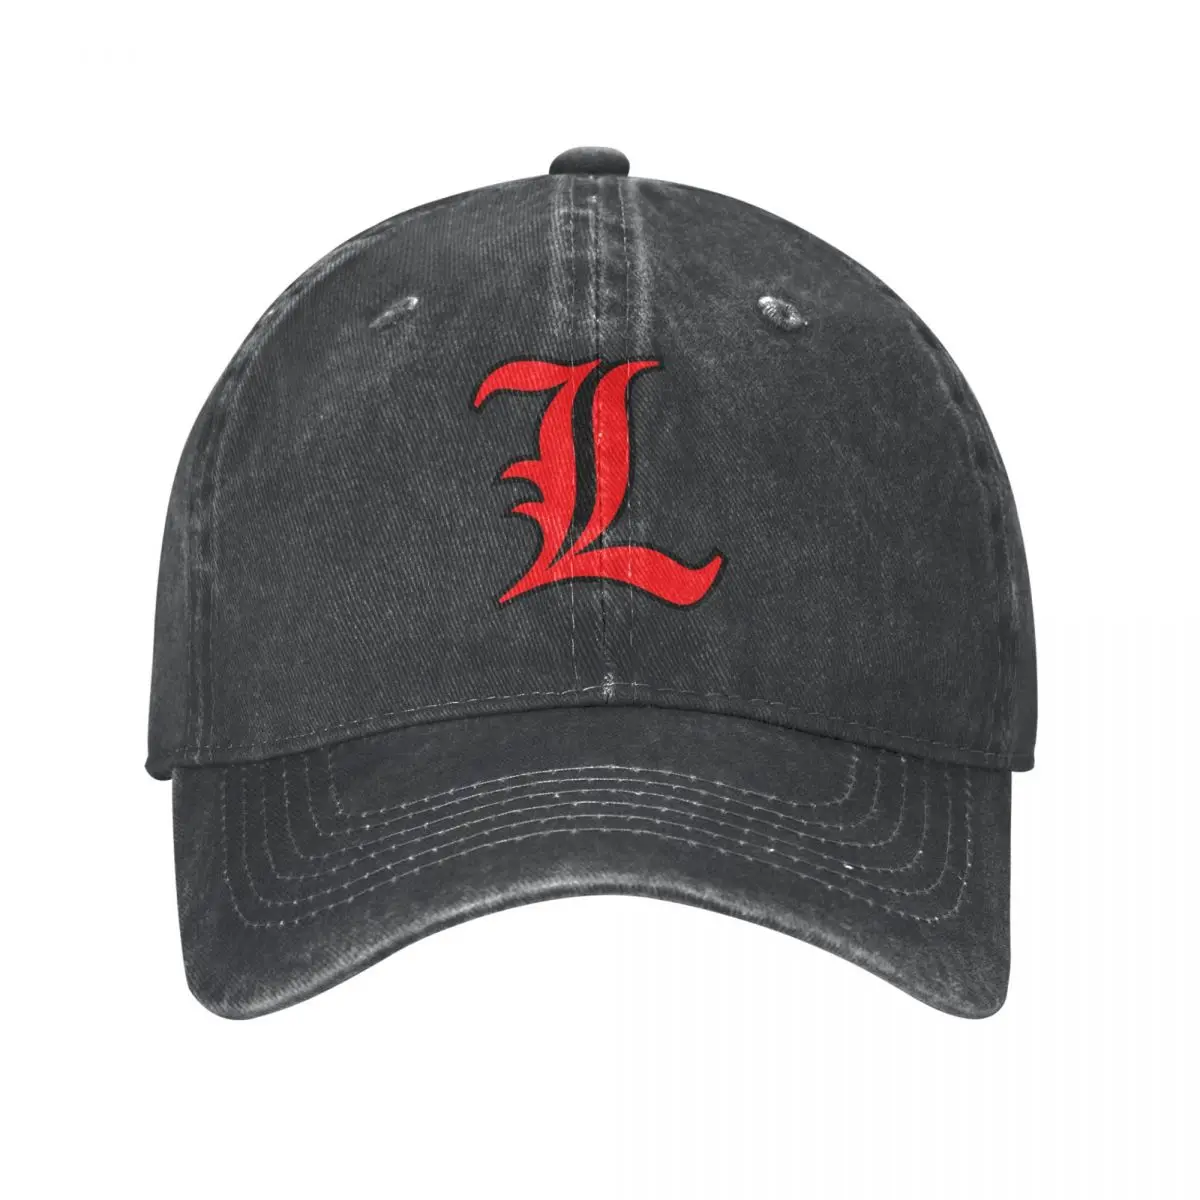 

Ковбойская шляпа Lucifer L, козырек, военные тактические кепки, Мужская Женская кепка